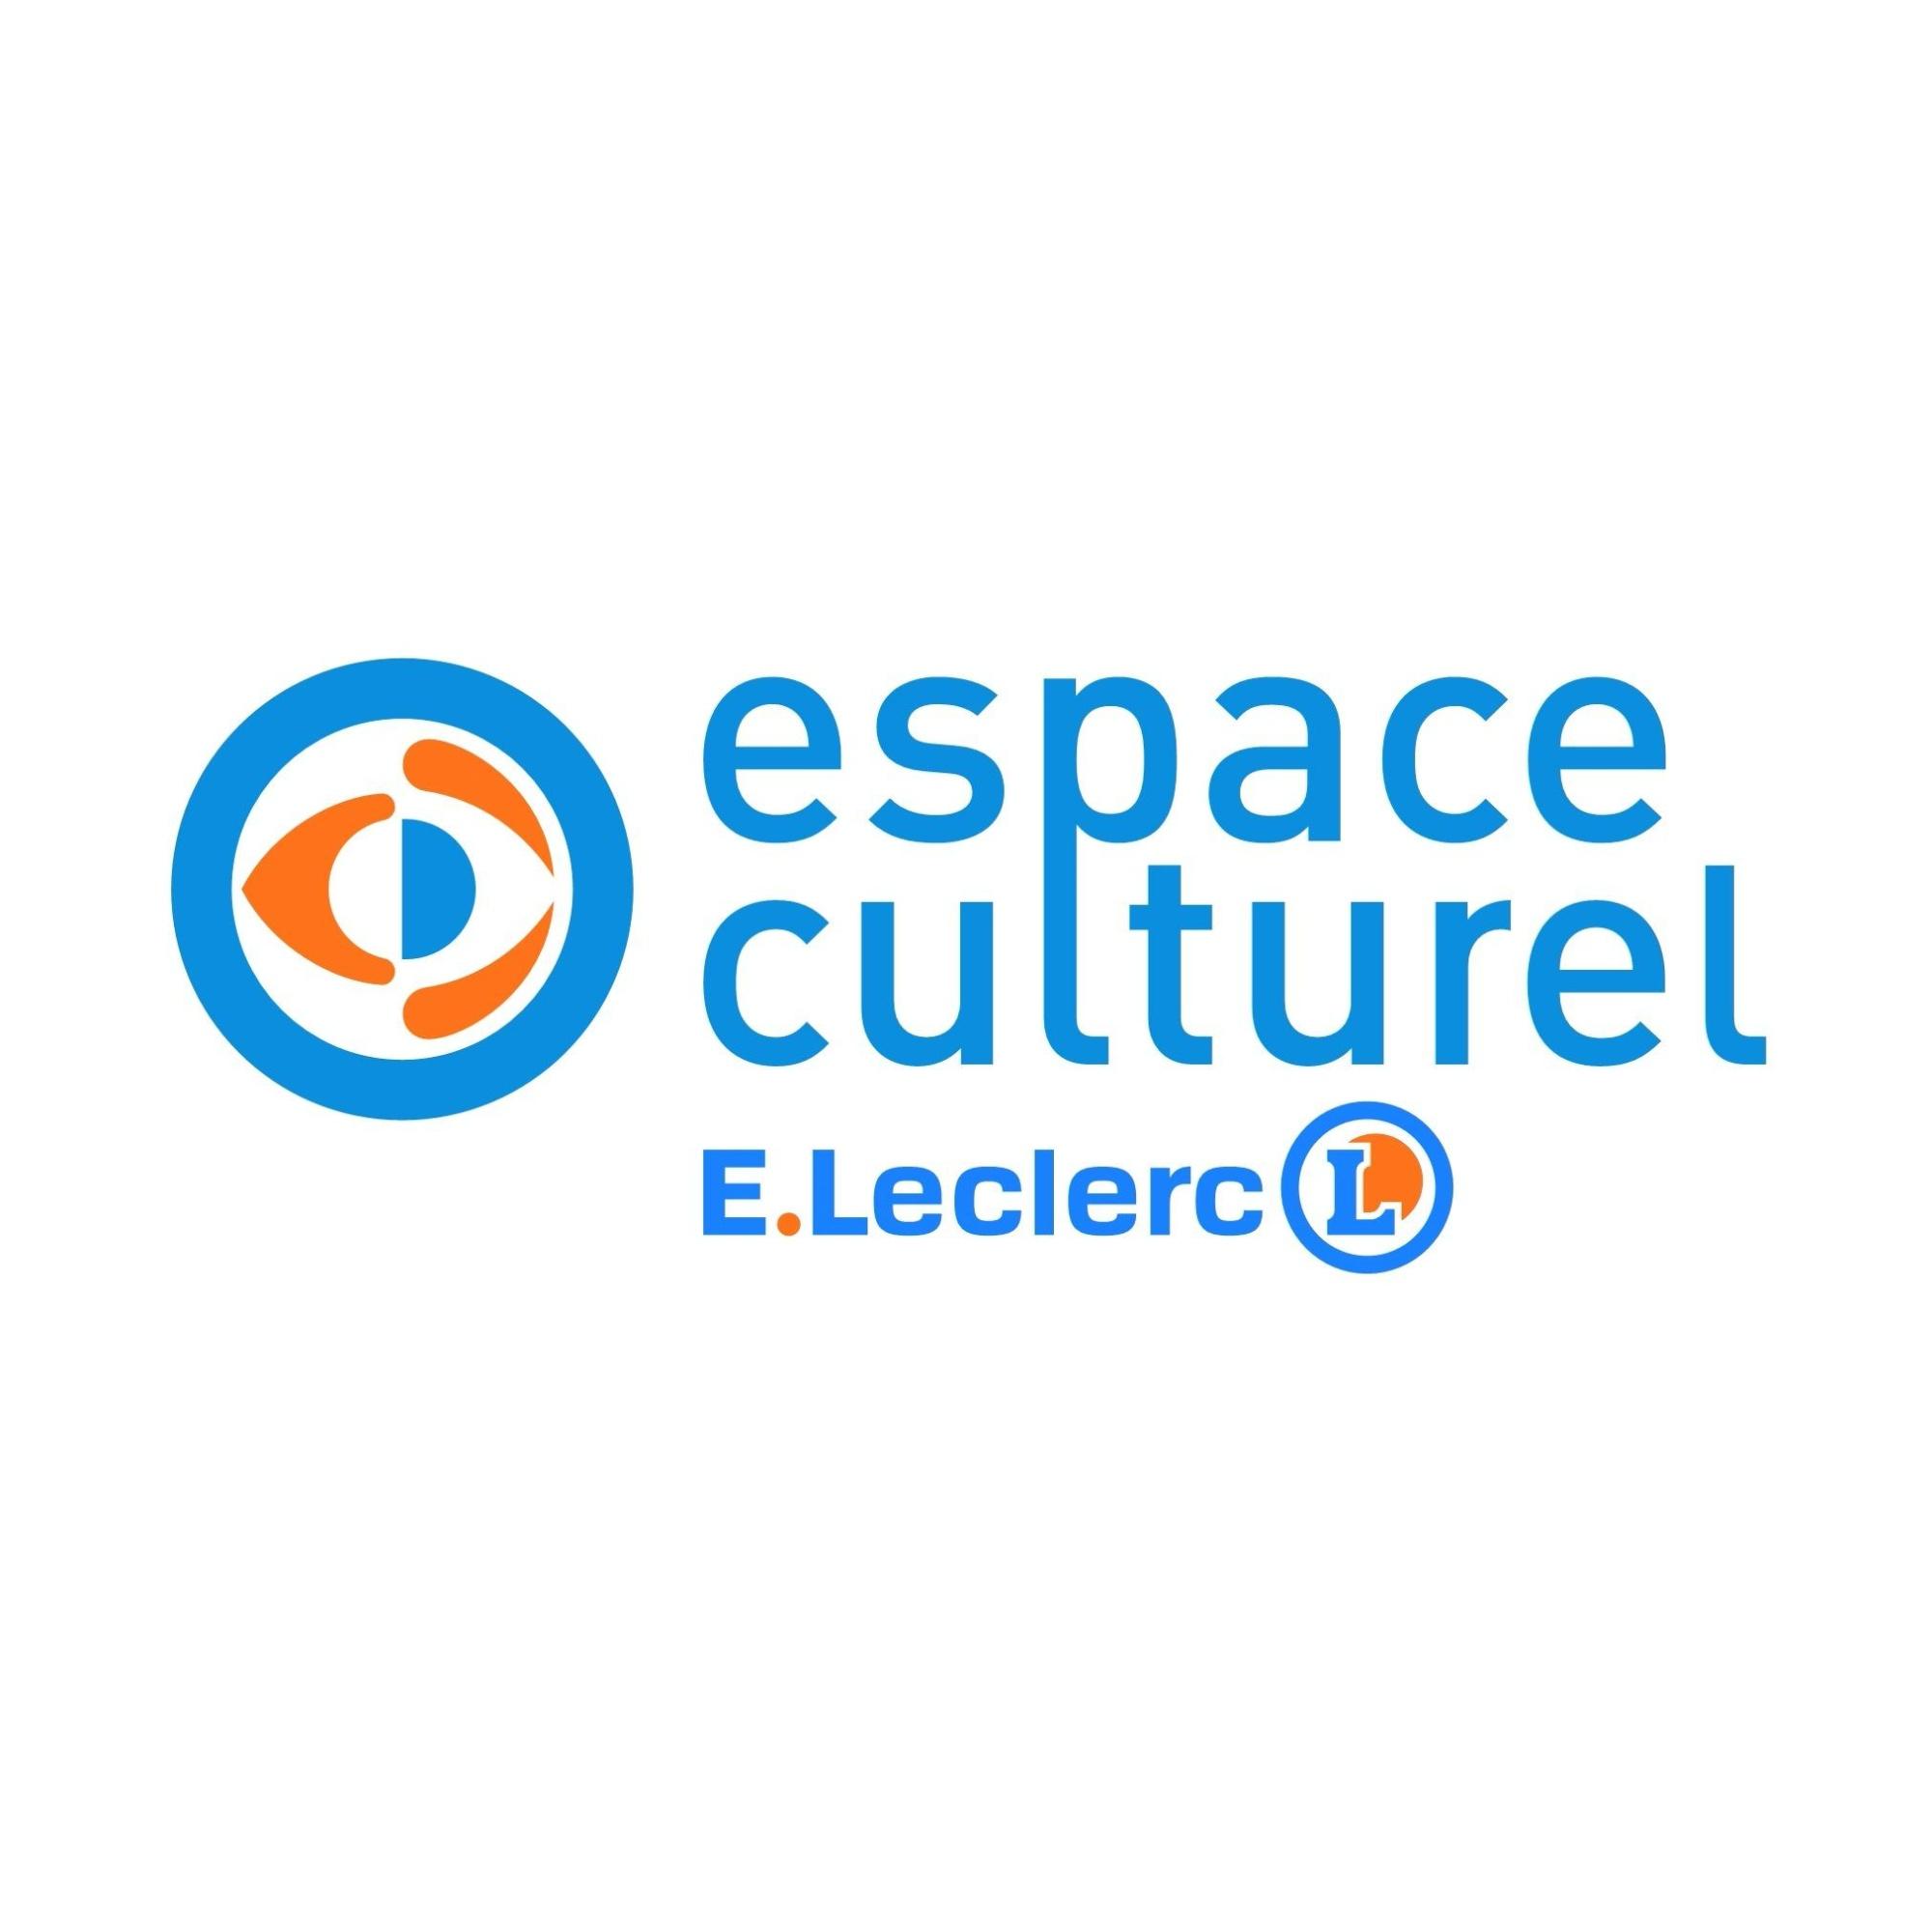 E.leclerc Espace Culturel Montceau Les Mines